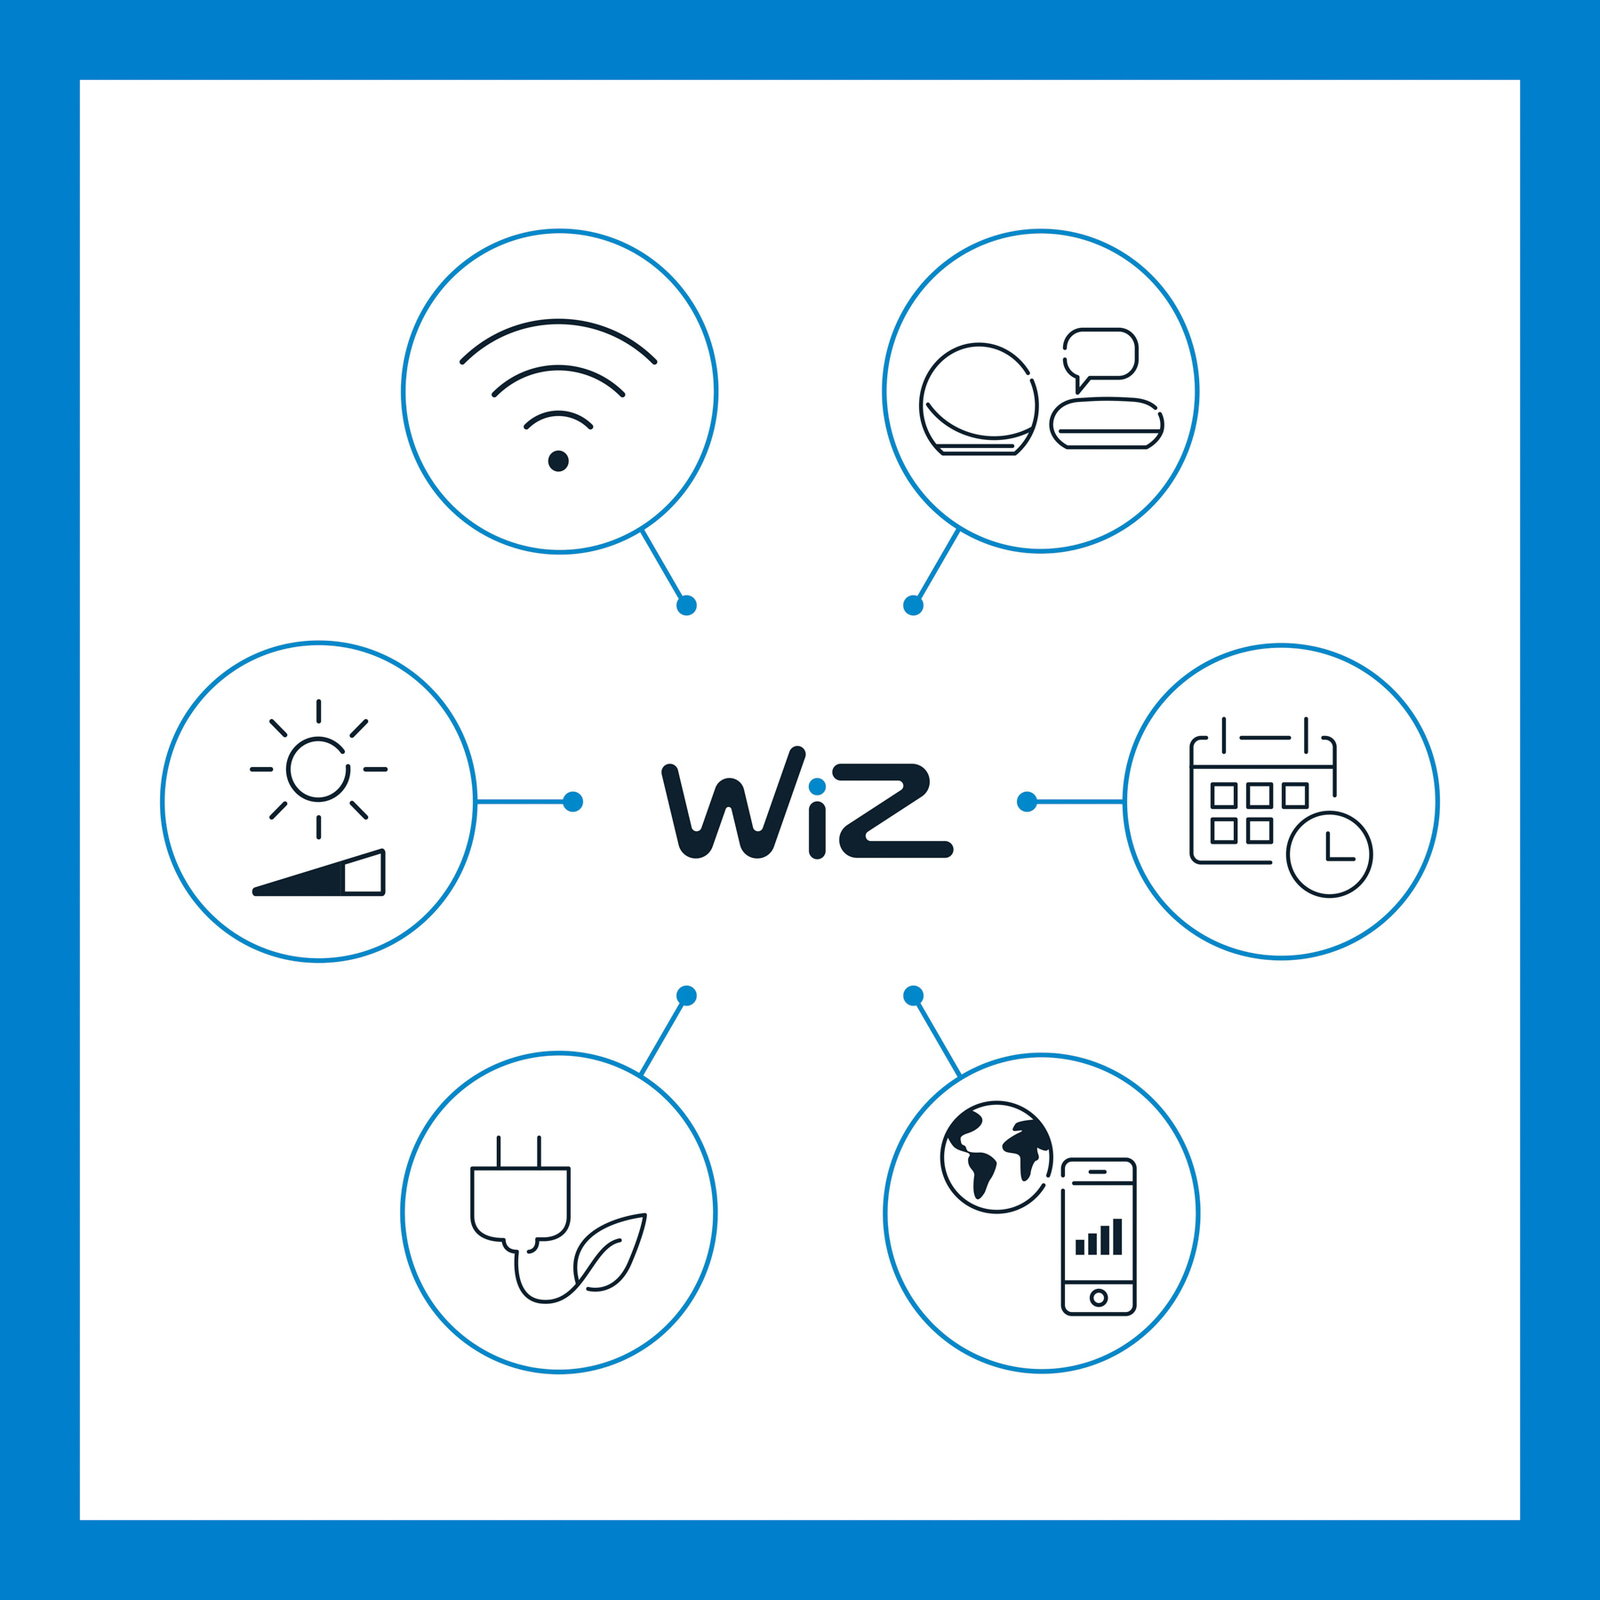 WiZ A60 ampoule LED Wi-Fi E27 7W CCT